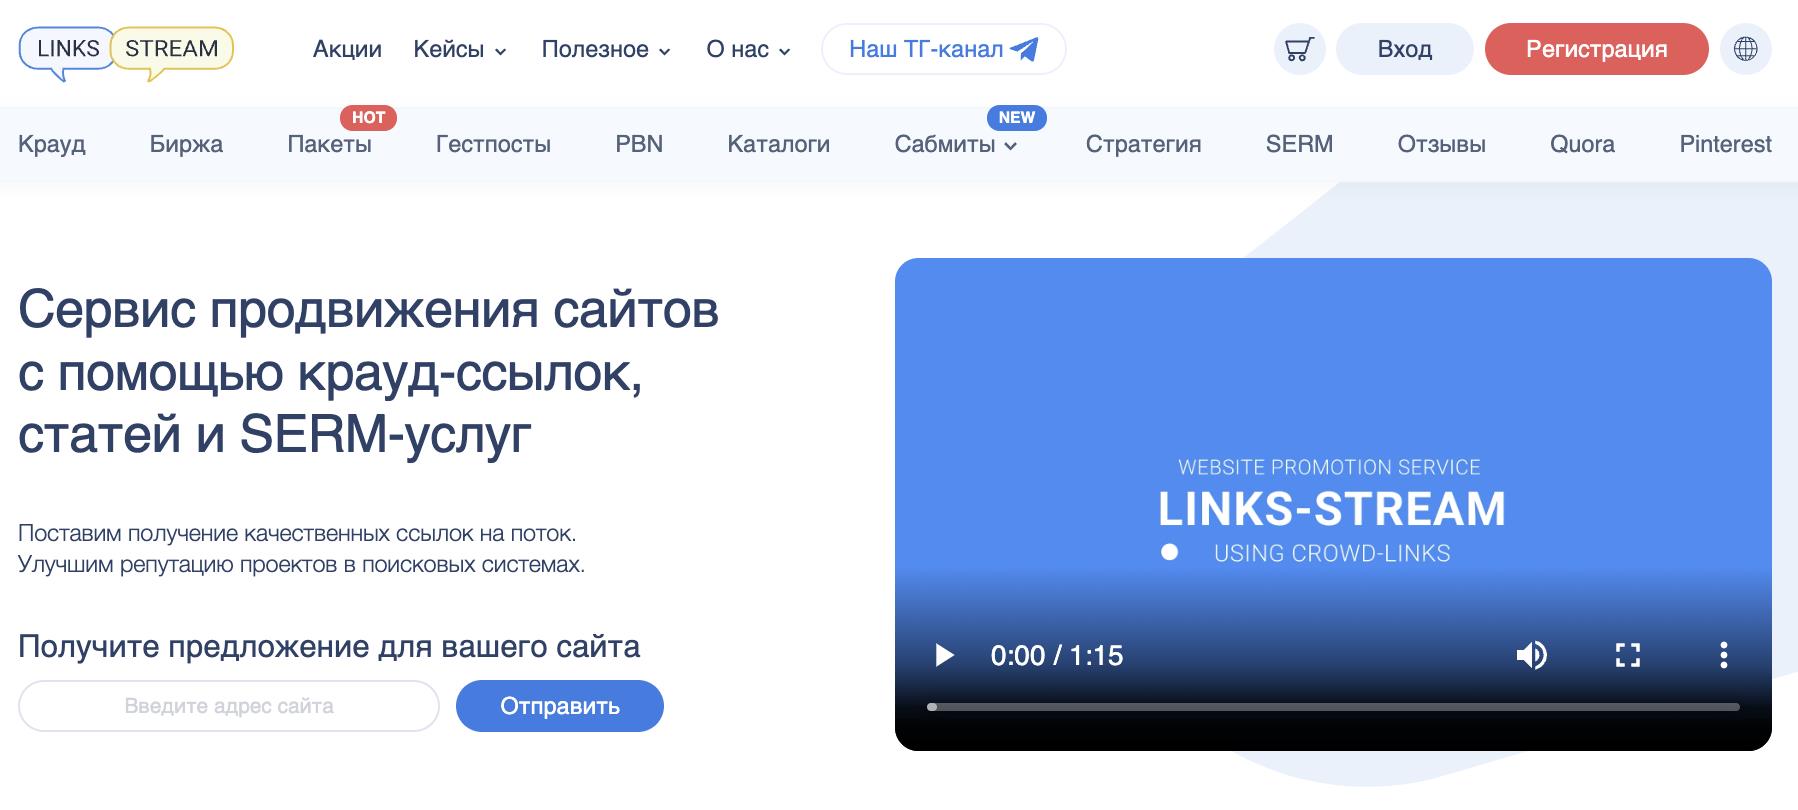 Links-Stream – продажа ссылок для сайта в Украине и других странах мира